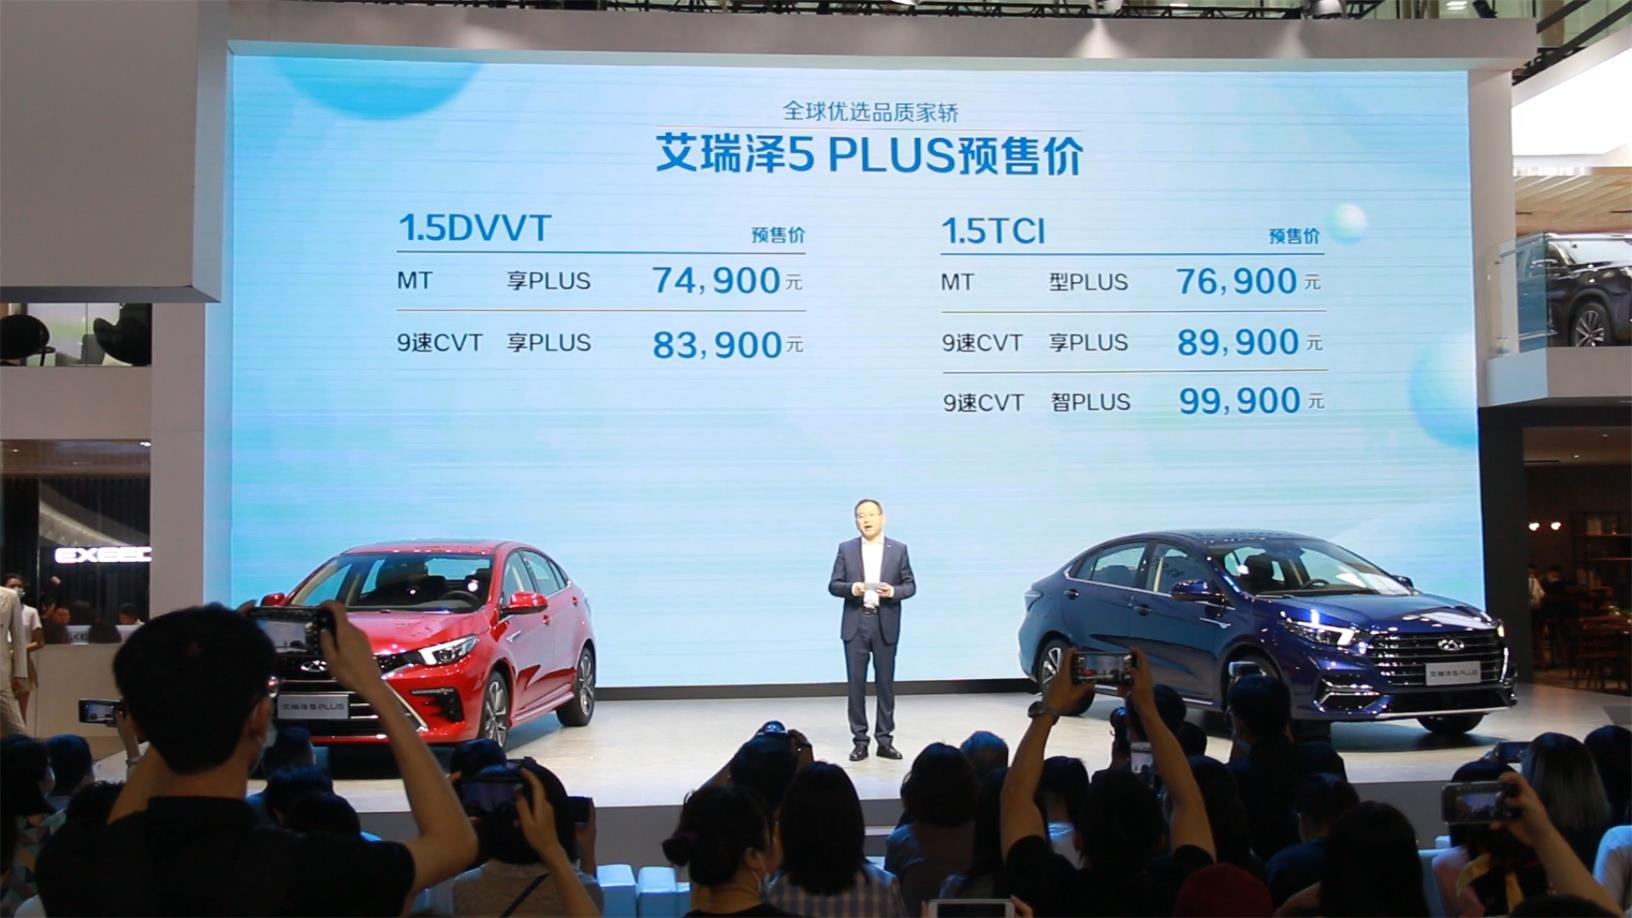 7.49-9.99万 全球优选品质家轿艾瑞泽5 PLUS启动预售